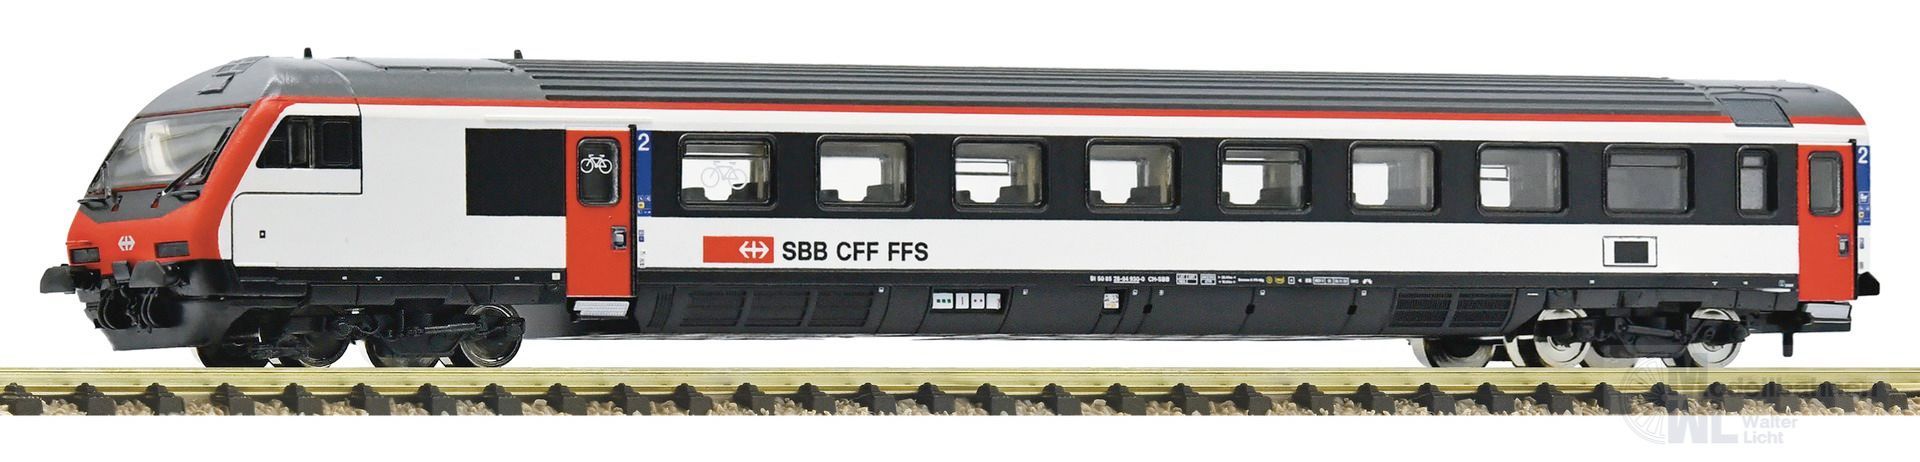 Fleischmann 6260018 - Steuerwagen SBB Ep.VI 2.KL. N 1:160